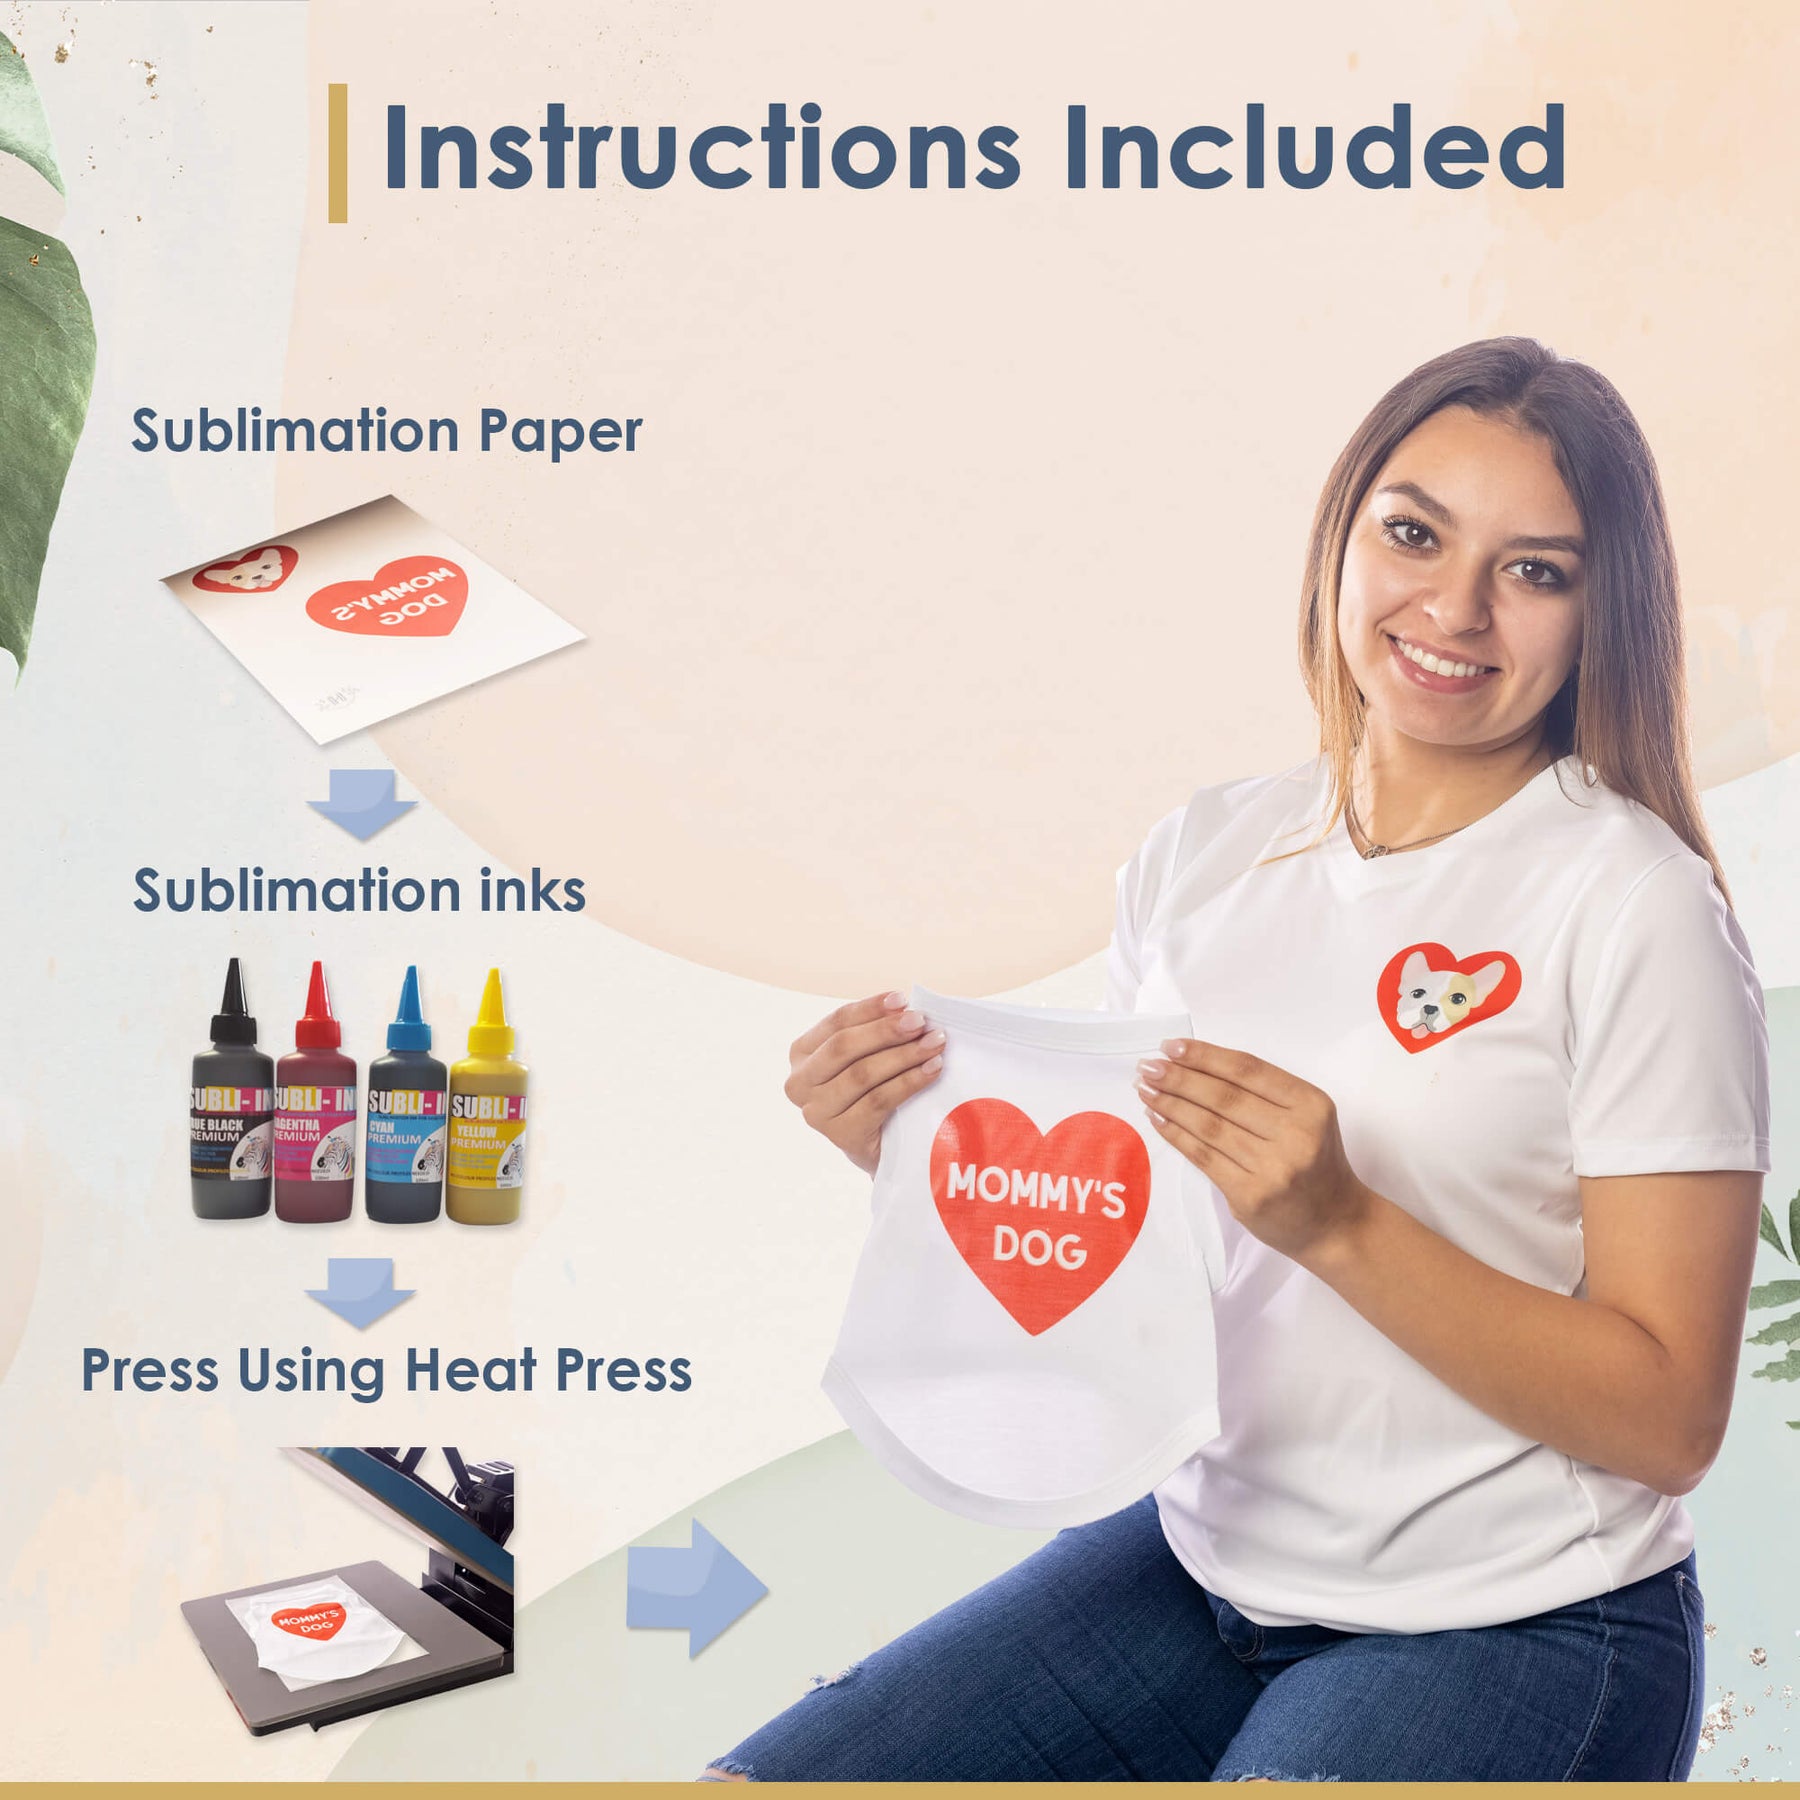 Premium Sublimation Paper-11x17